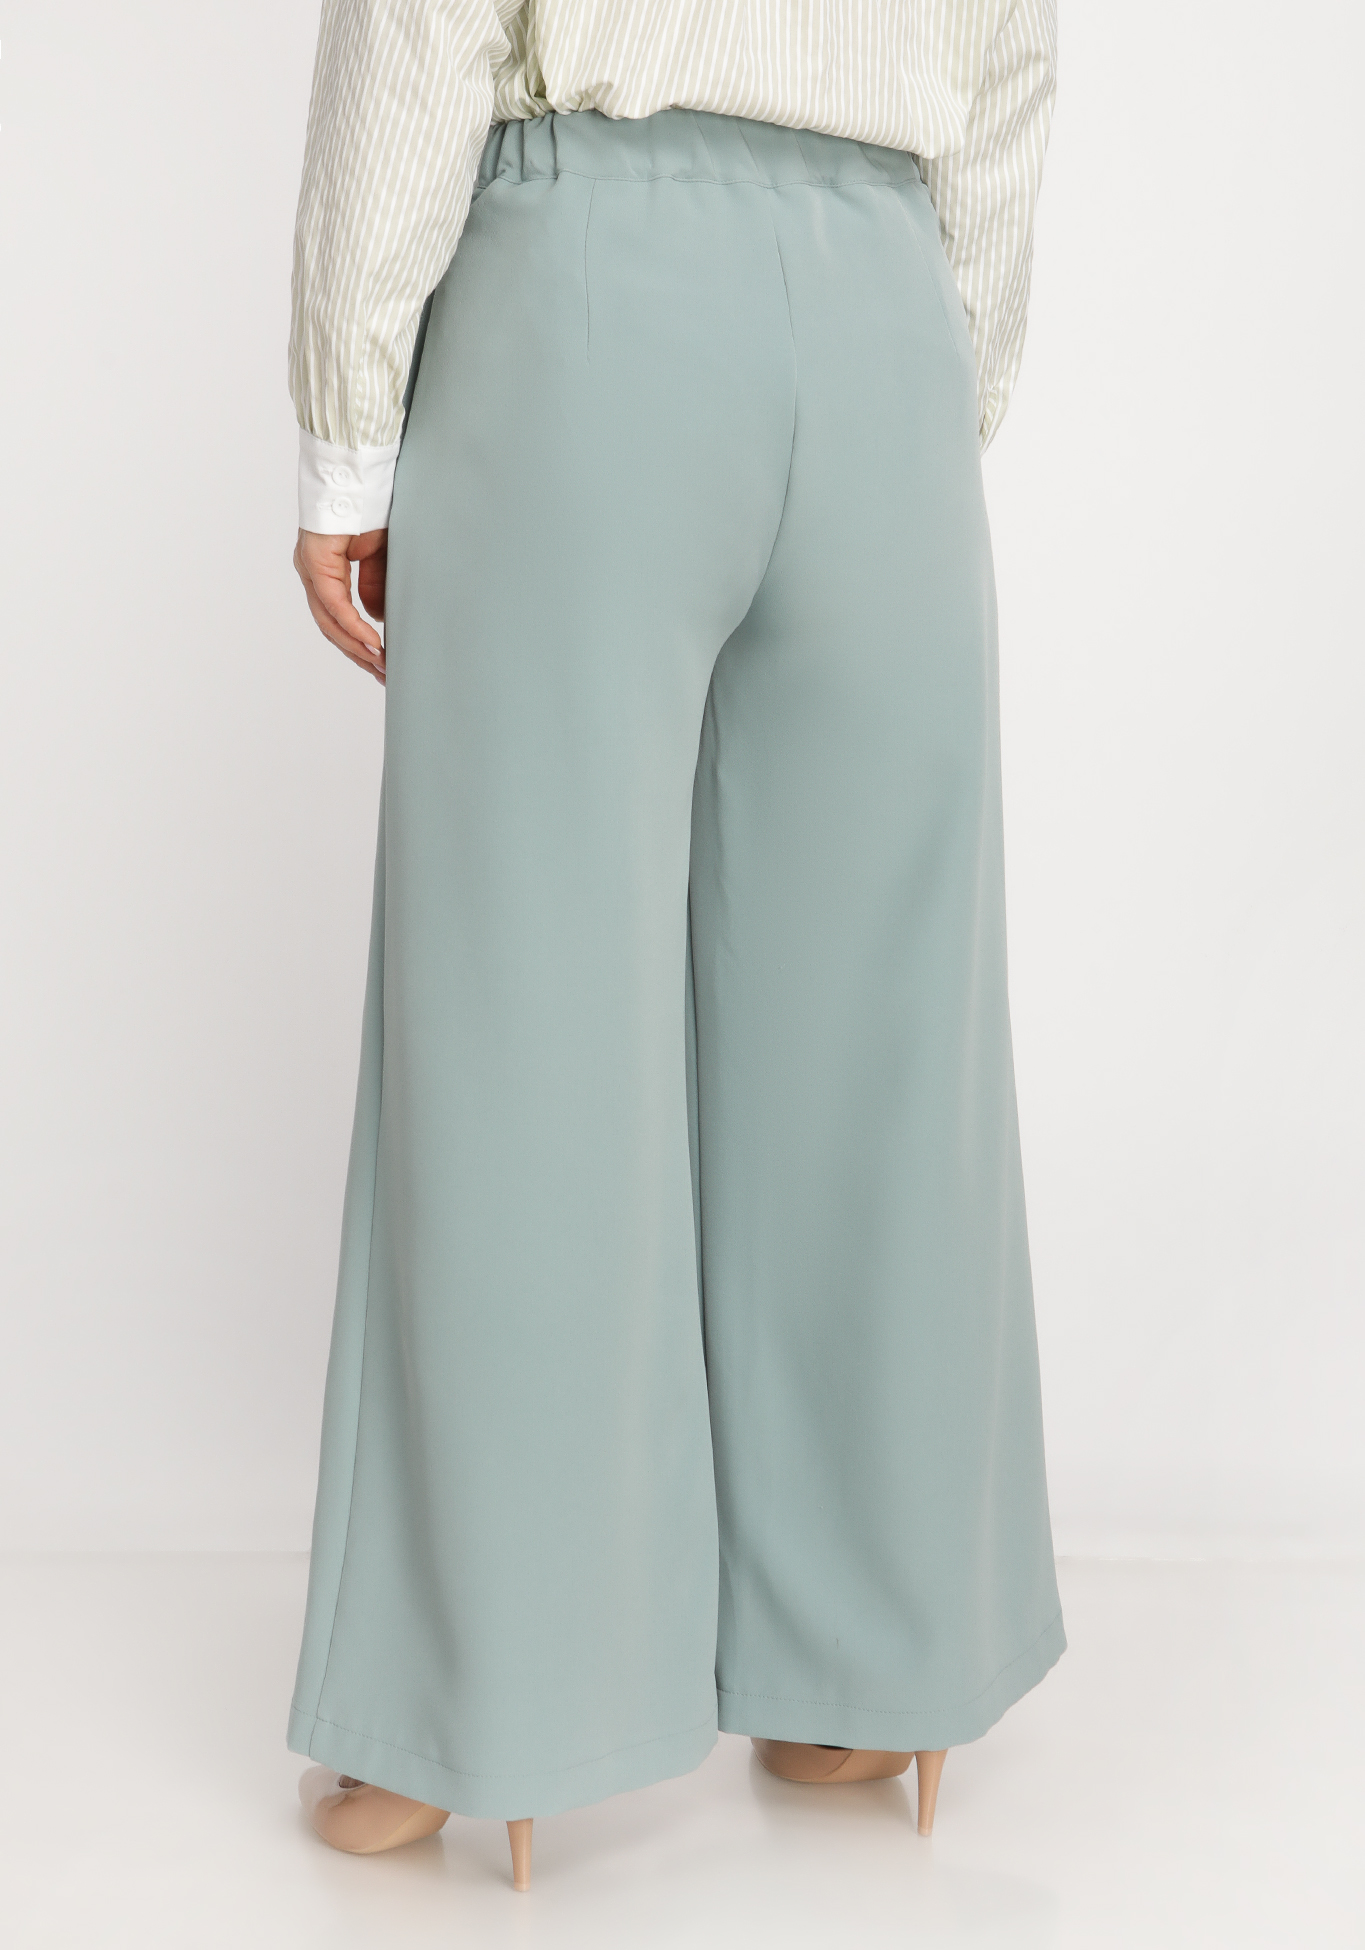 Юбка-брюки со складками SVETLANA VORONTSOVA, размер 54, цвет бежевый - фото 7